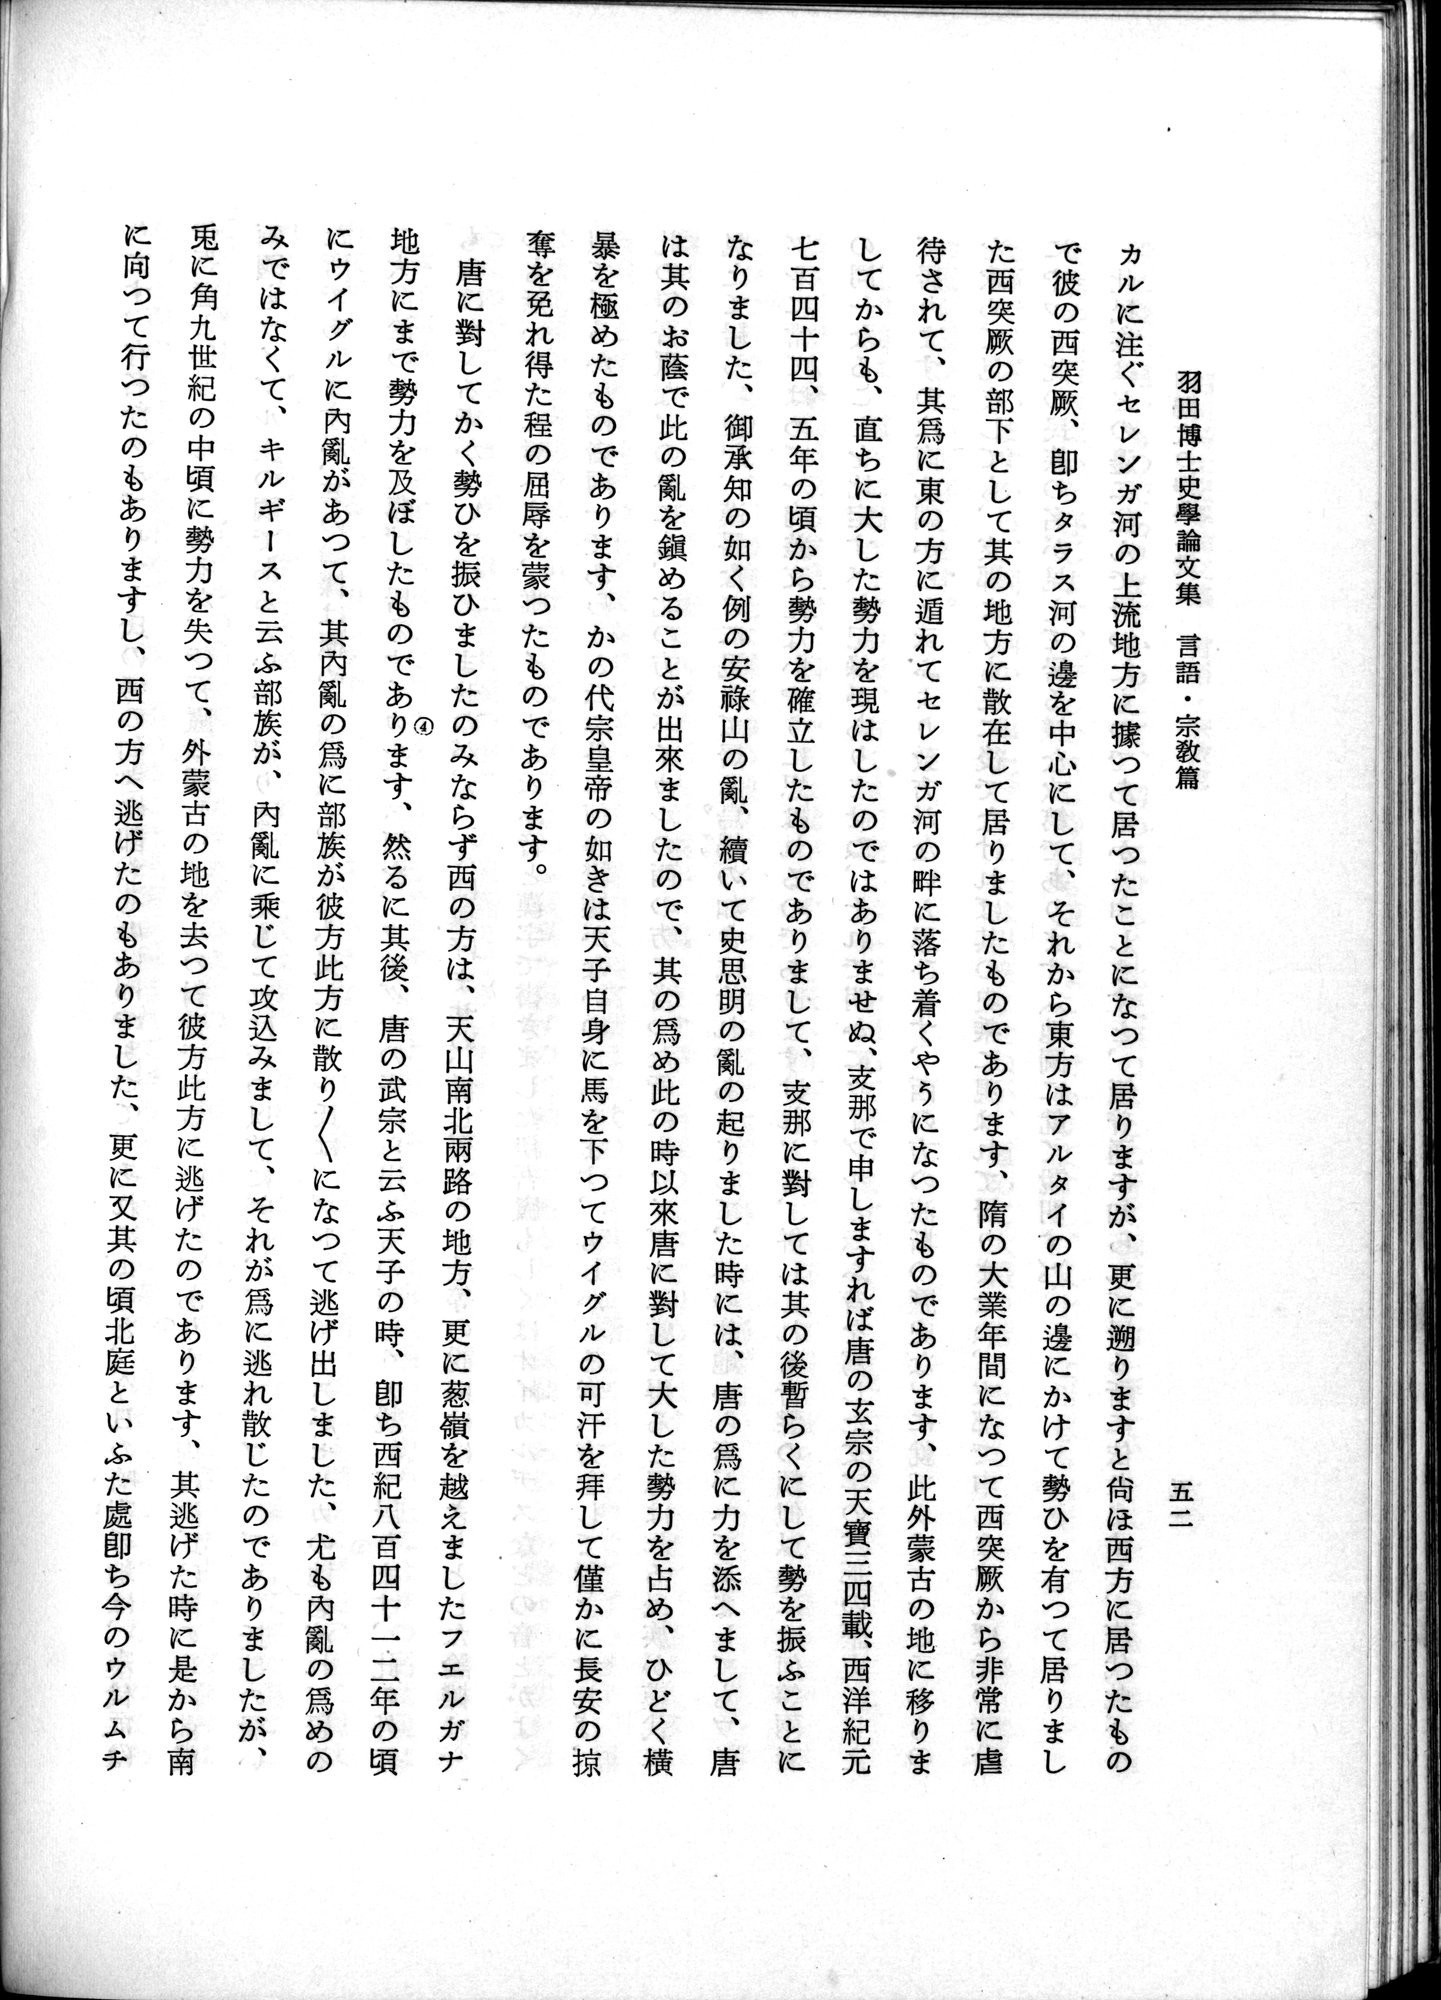 羽田博士史学論文集 : vol.2 / Page 102 (Grayscale High Resolution Image)